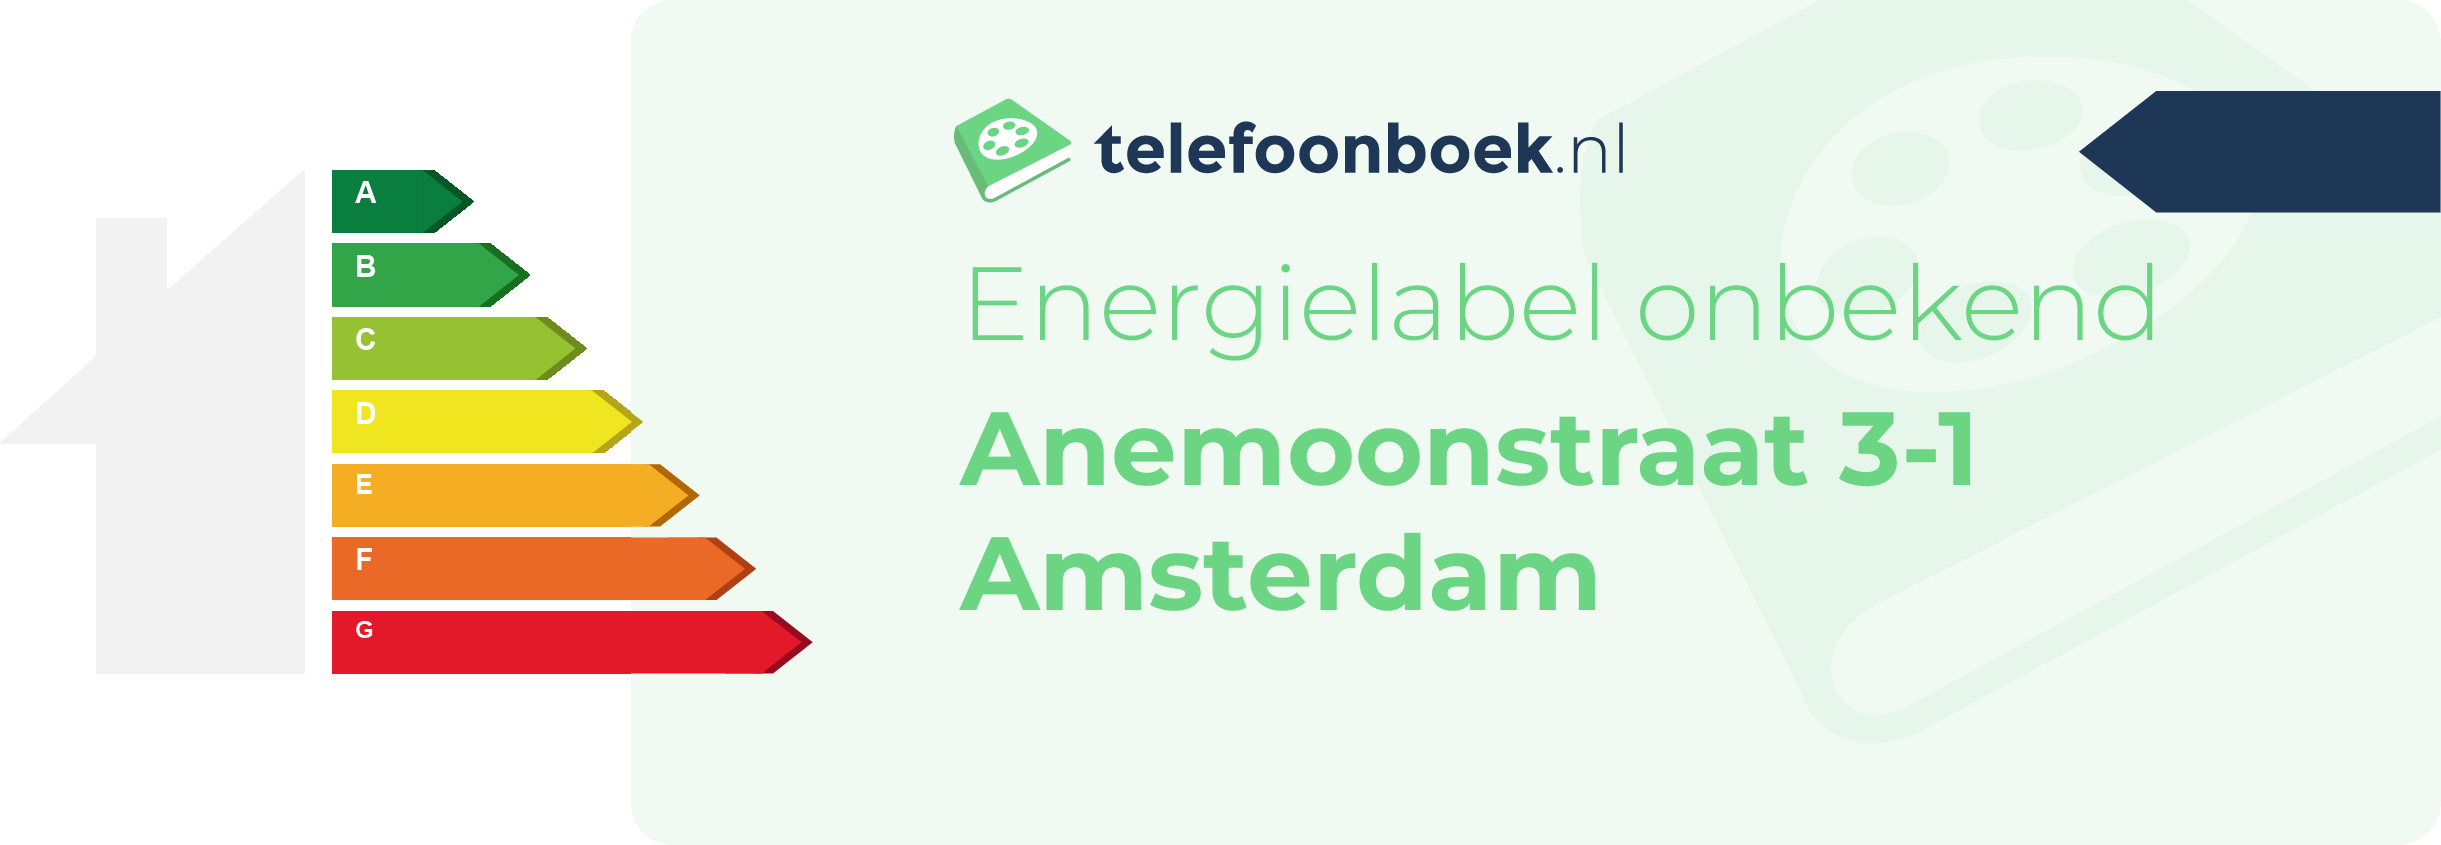 Energielabel Anemoonstraat 3-1 Amsterdam